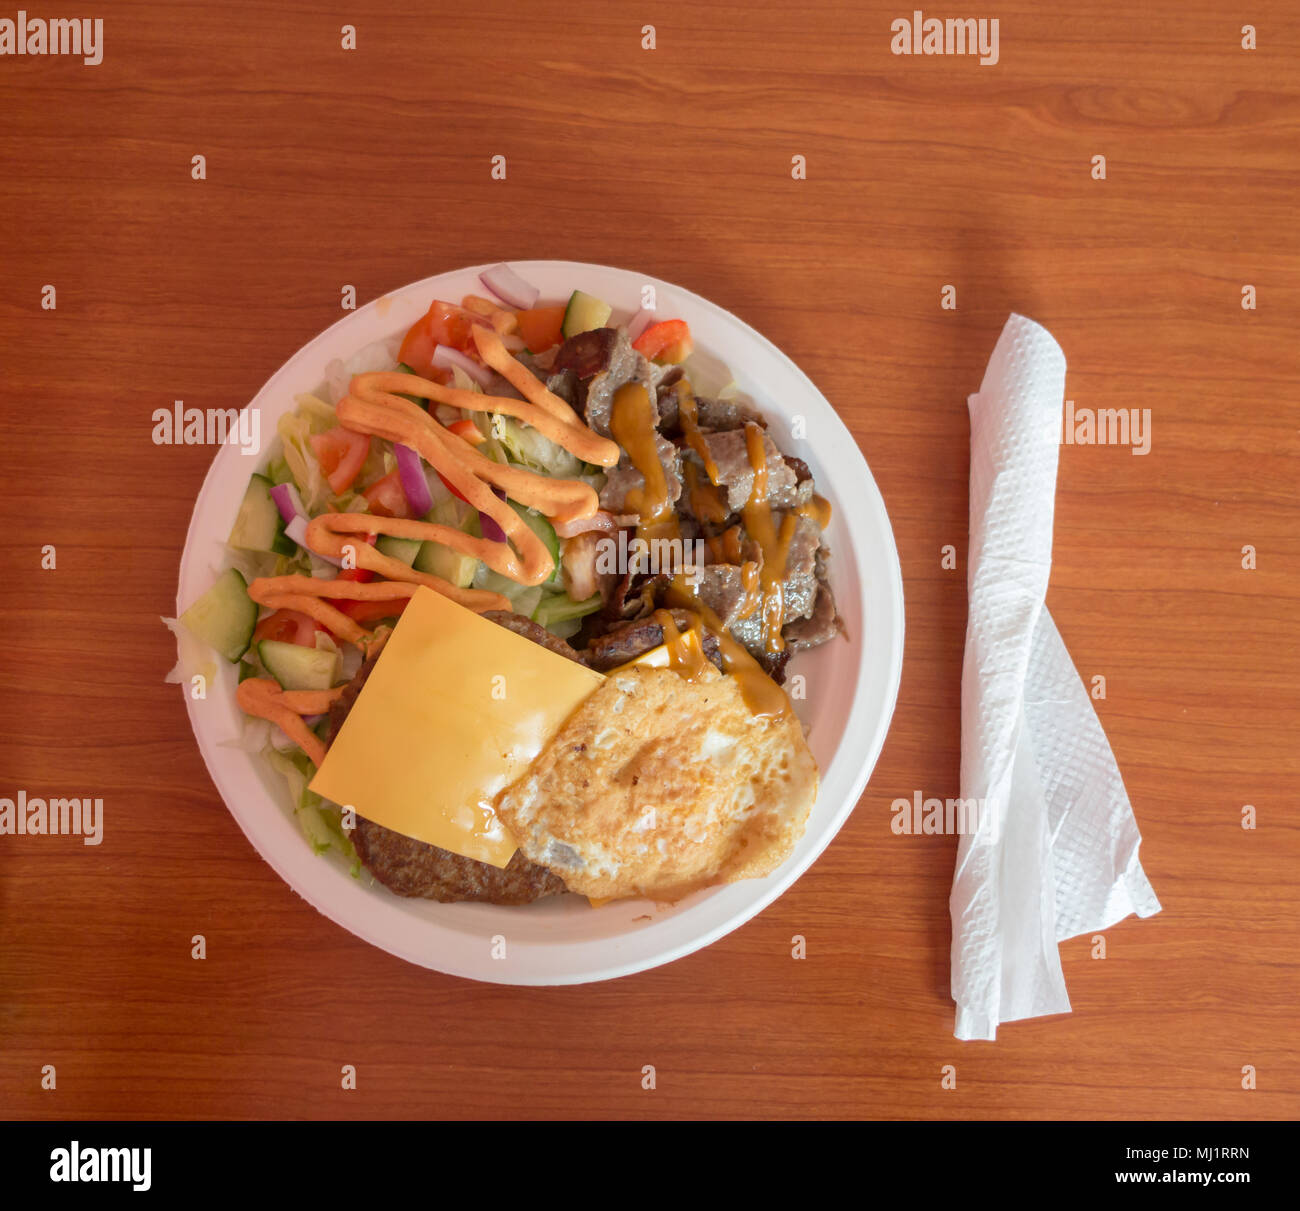 Einfaches Mittagessen Platte mit Kebab, Eier, Käse, Fleisch und Salat an ein preiswertes Restaurant serviert Stockfoto